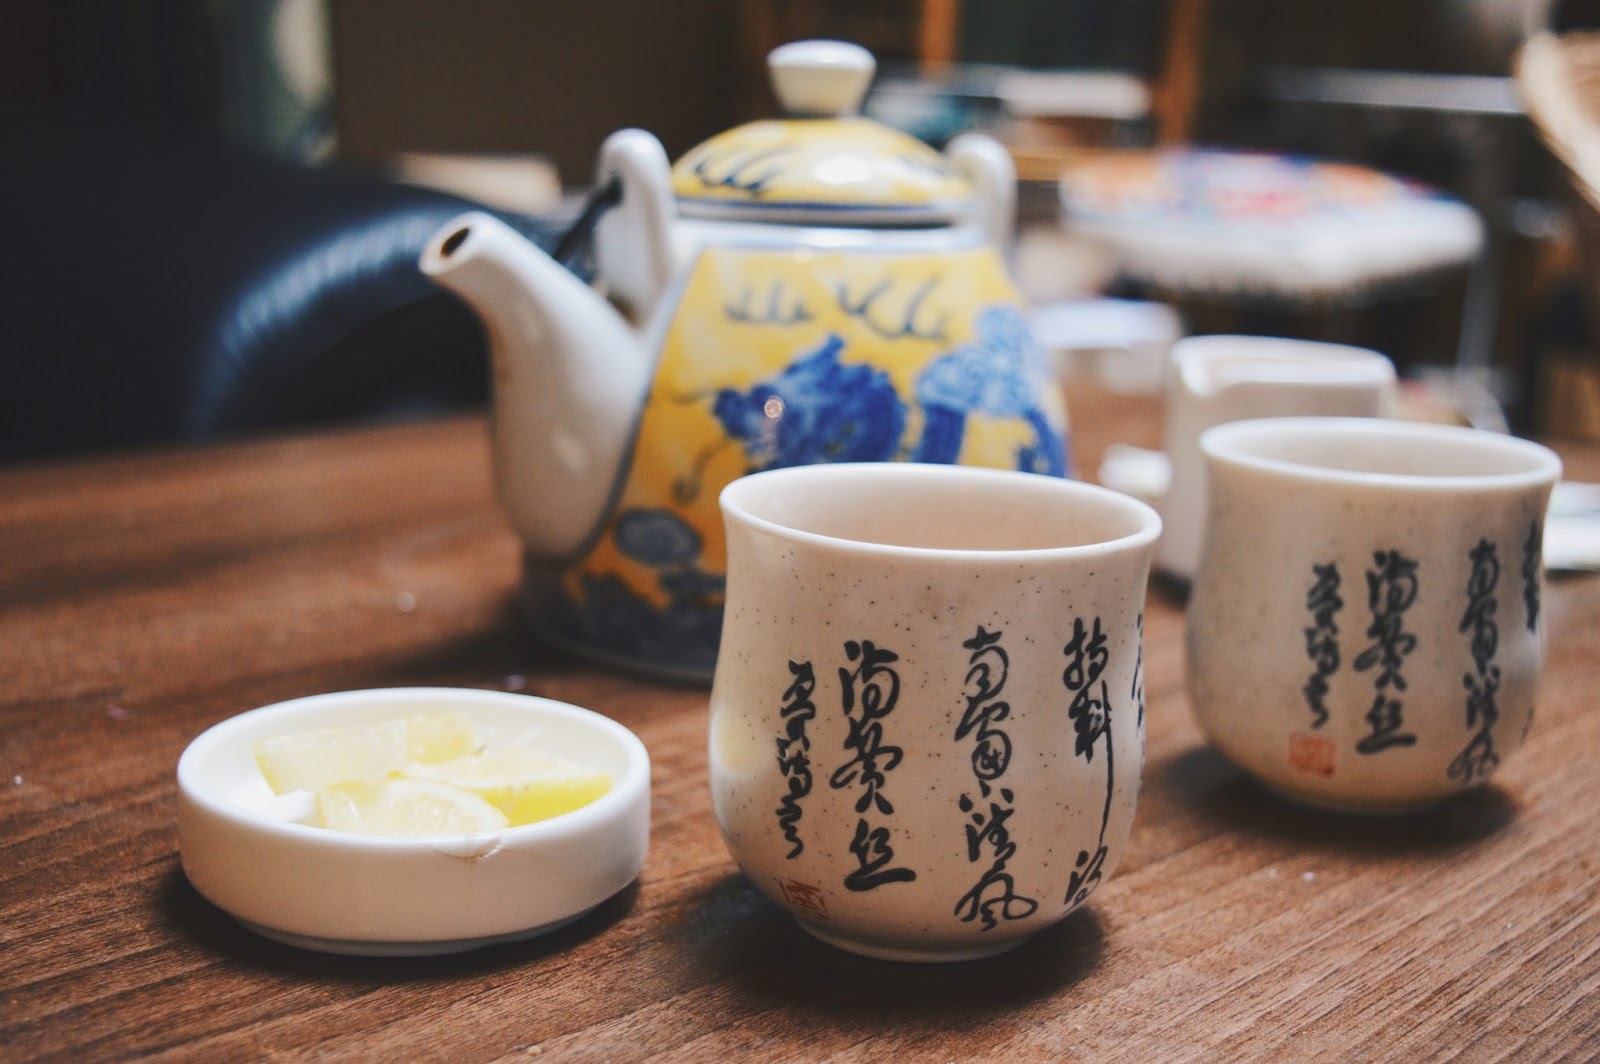 close up of tea pot and cups